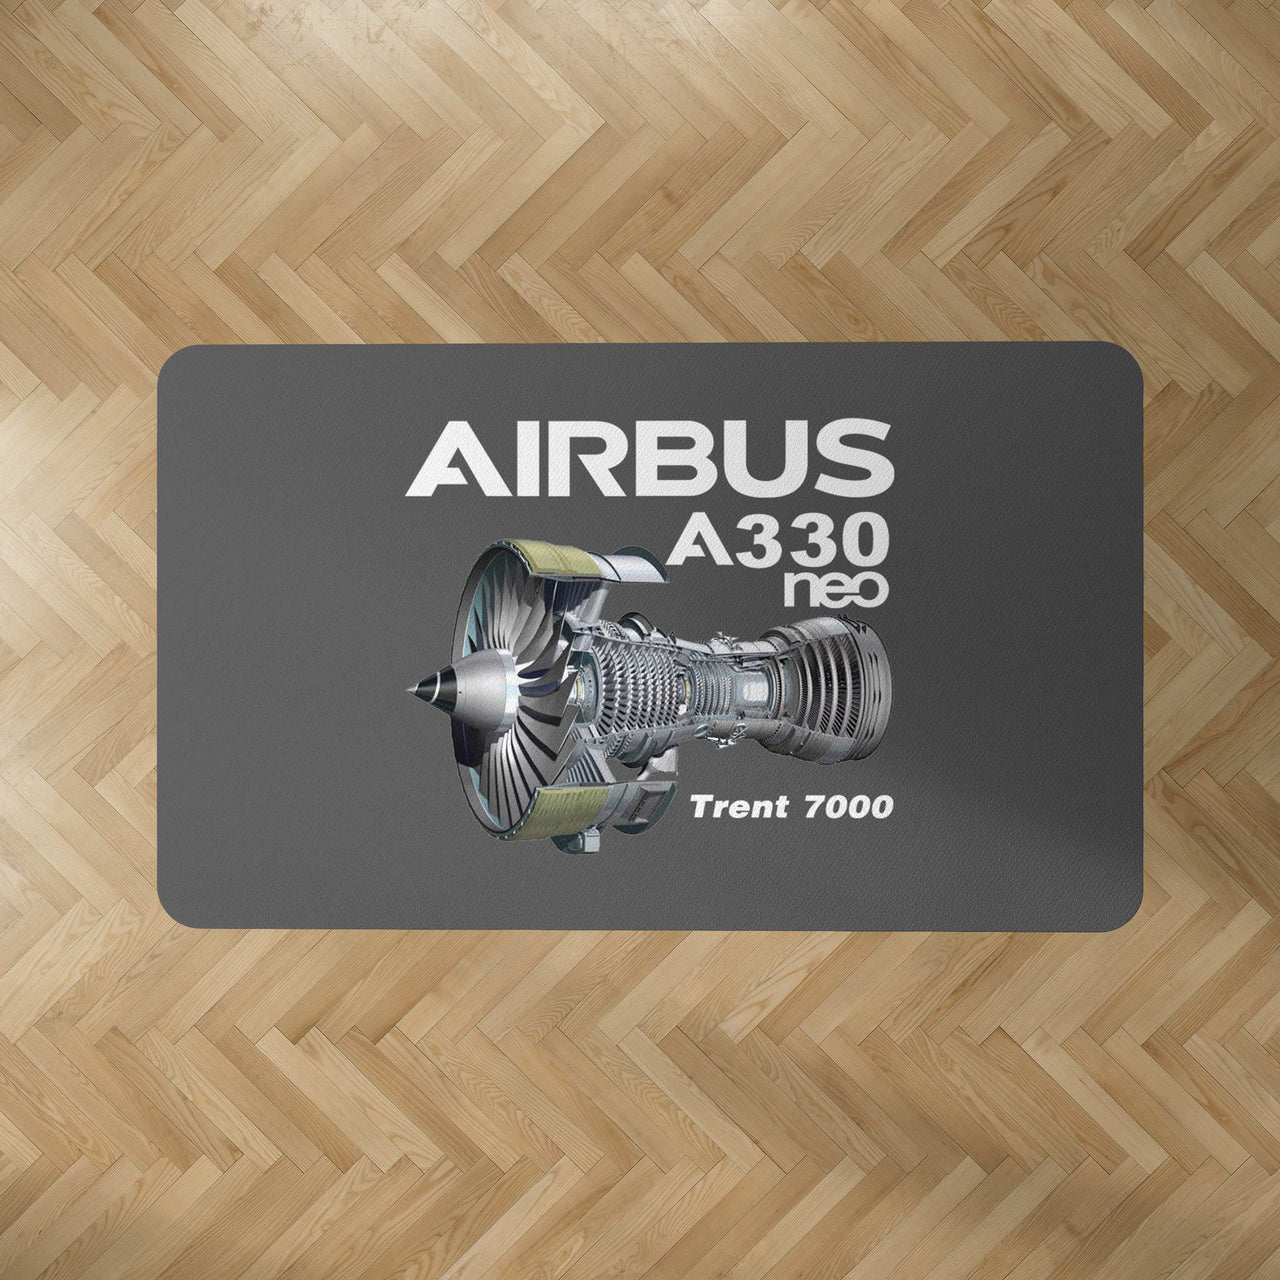 Airbus A330neo & Trent 7000 Designed Carpet & Floor Mats